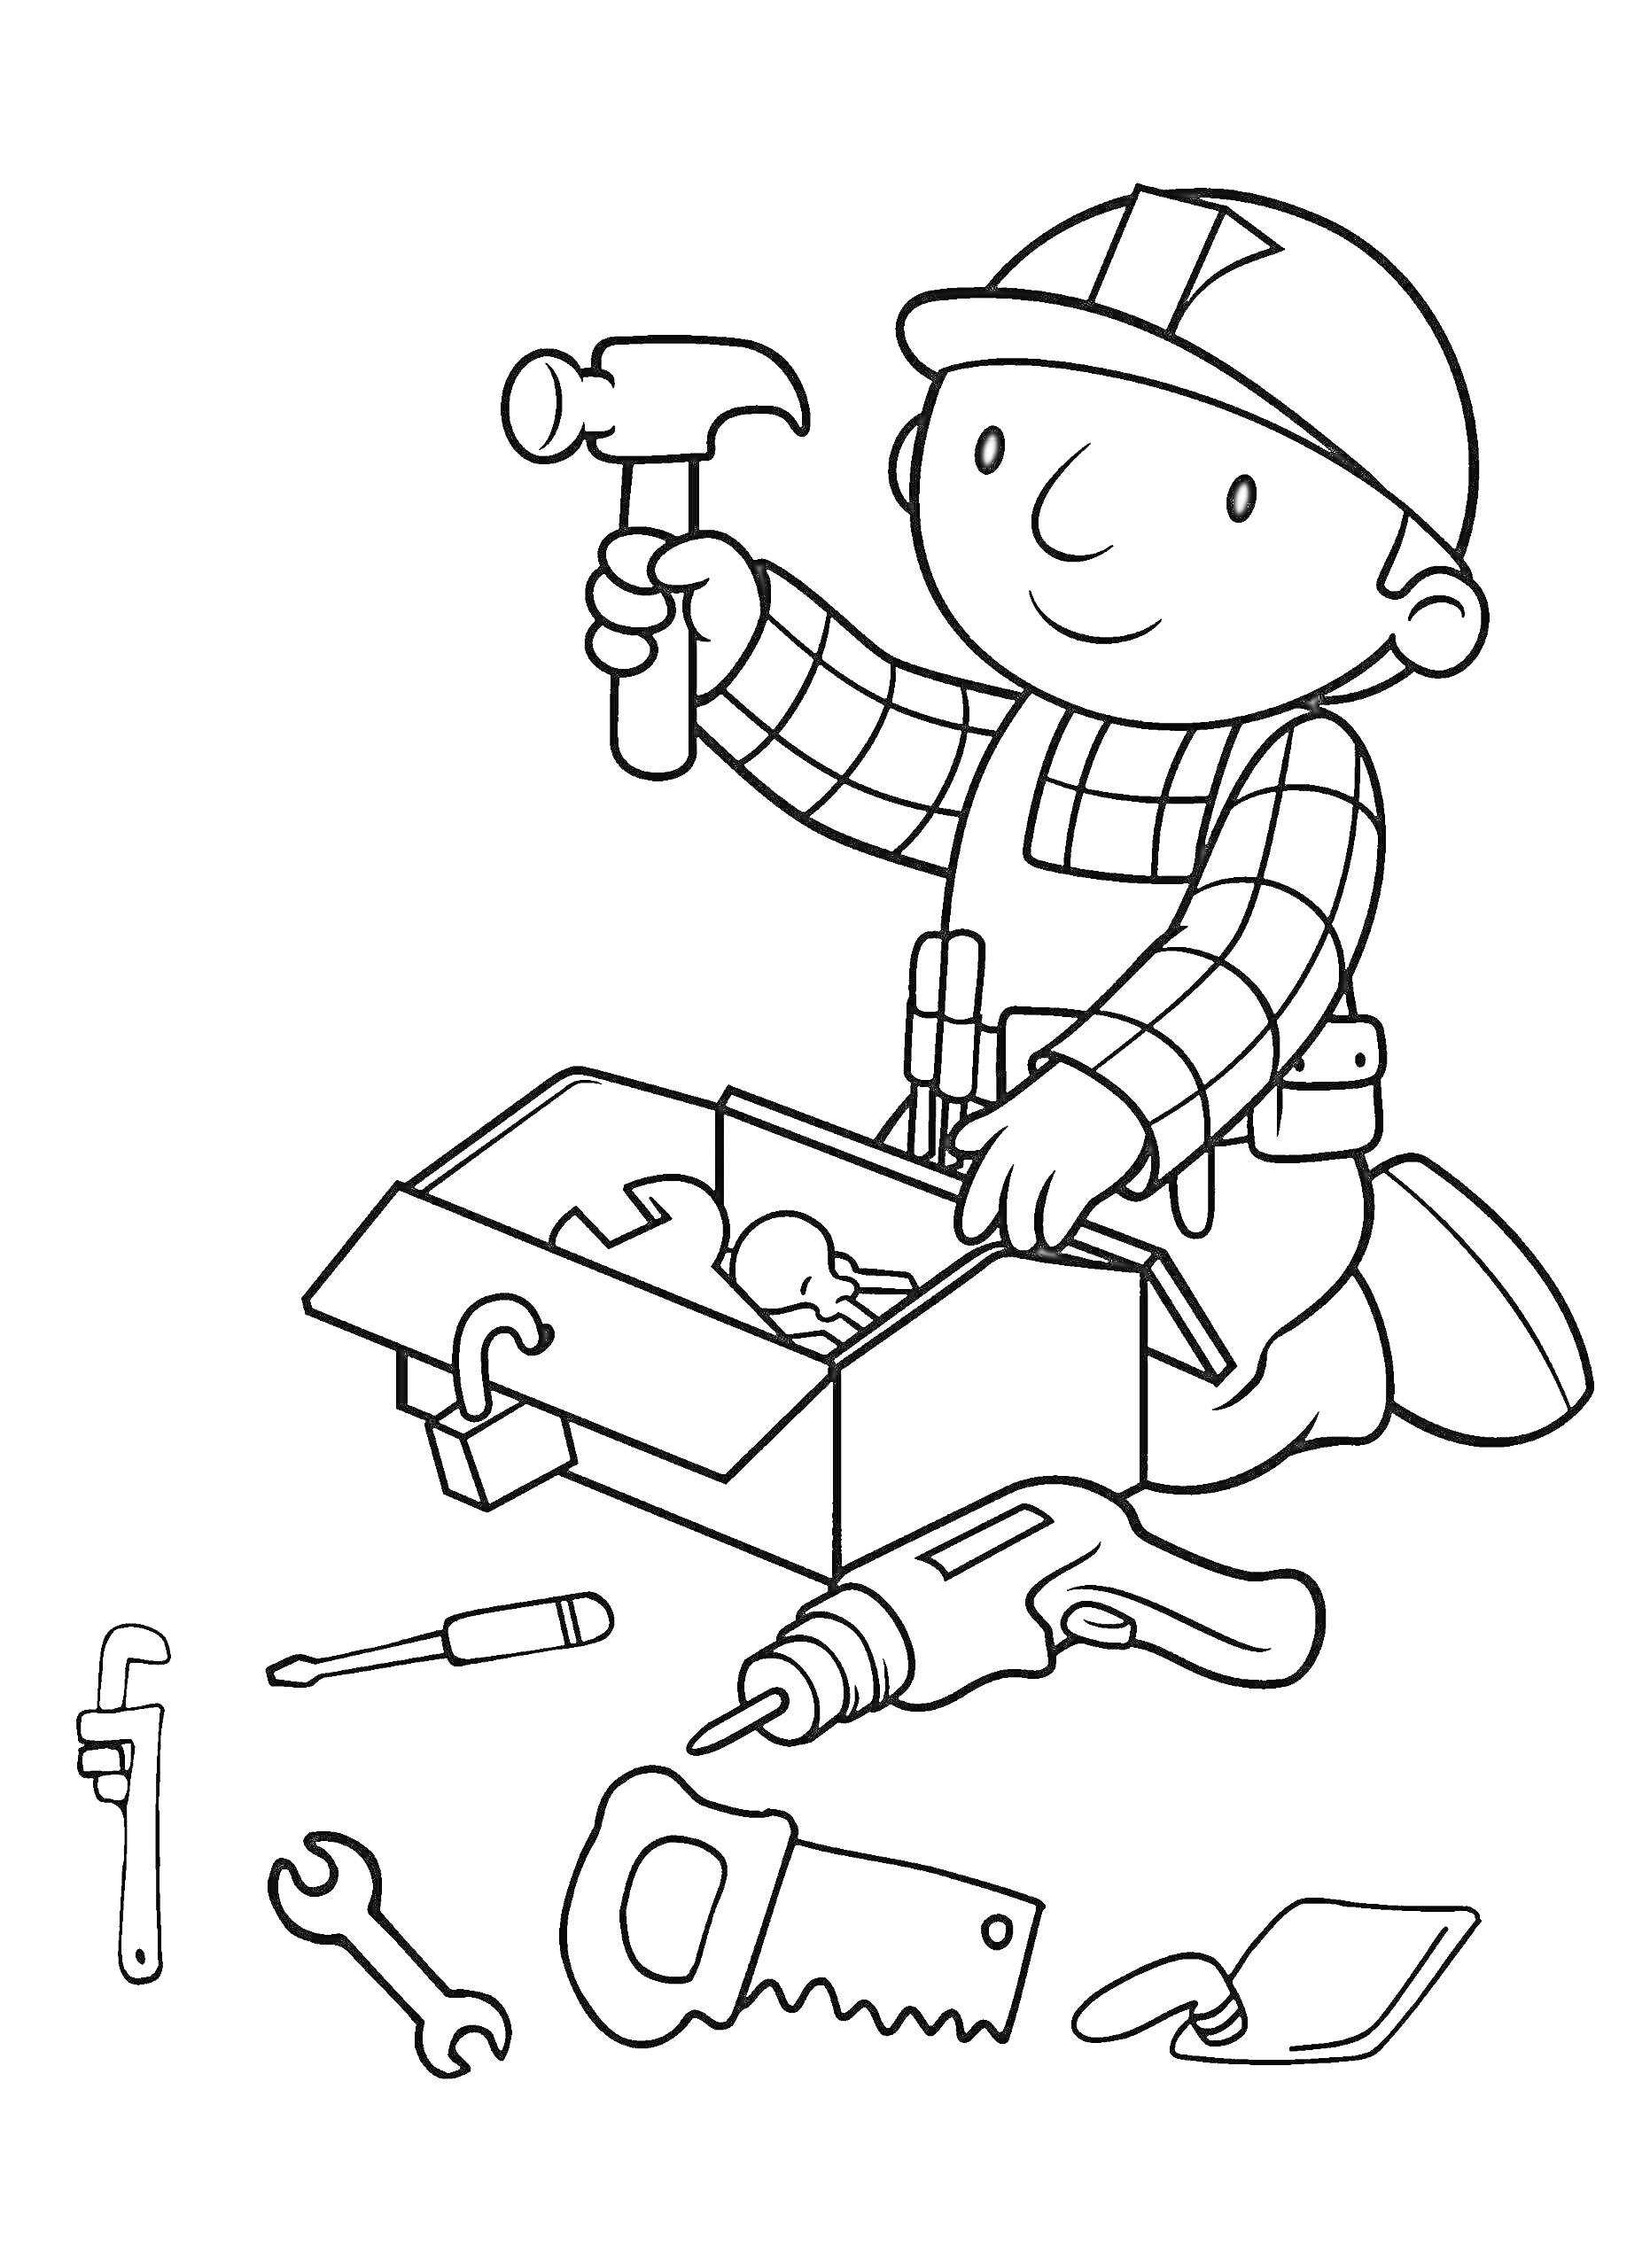 Боб строитель с молотком и ящиком для инструментов, вокруг разбросаны различные инструменты